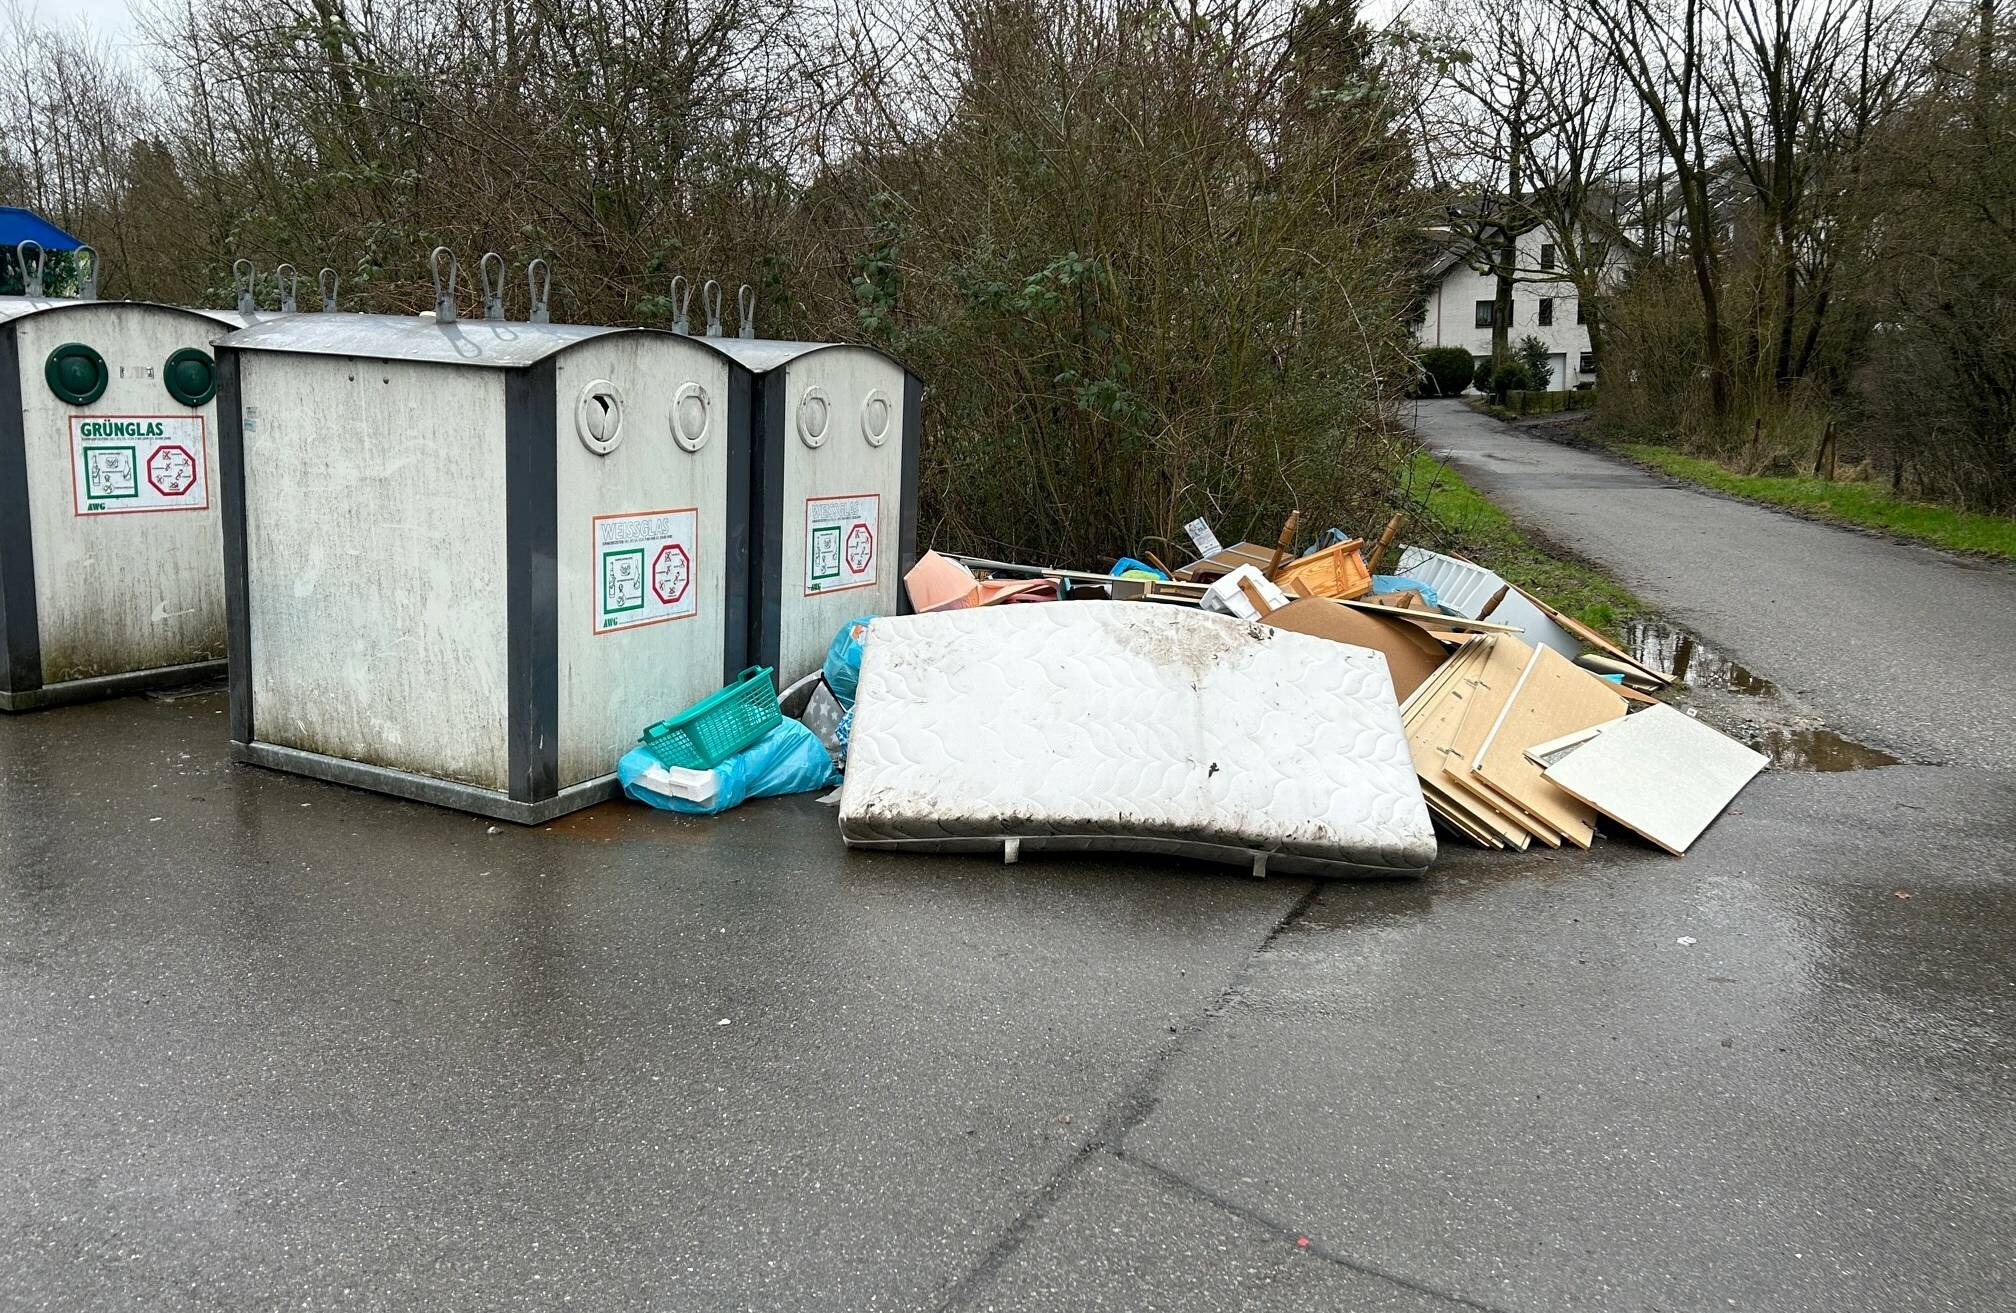  Die Müllabfuhr streikte, aber der Sperrmüll auf dem Dönberg wurde trotzdem "entsorgt". Allerdings illegal.  